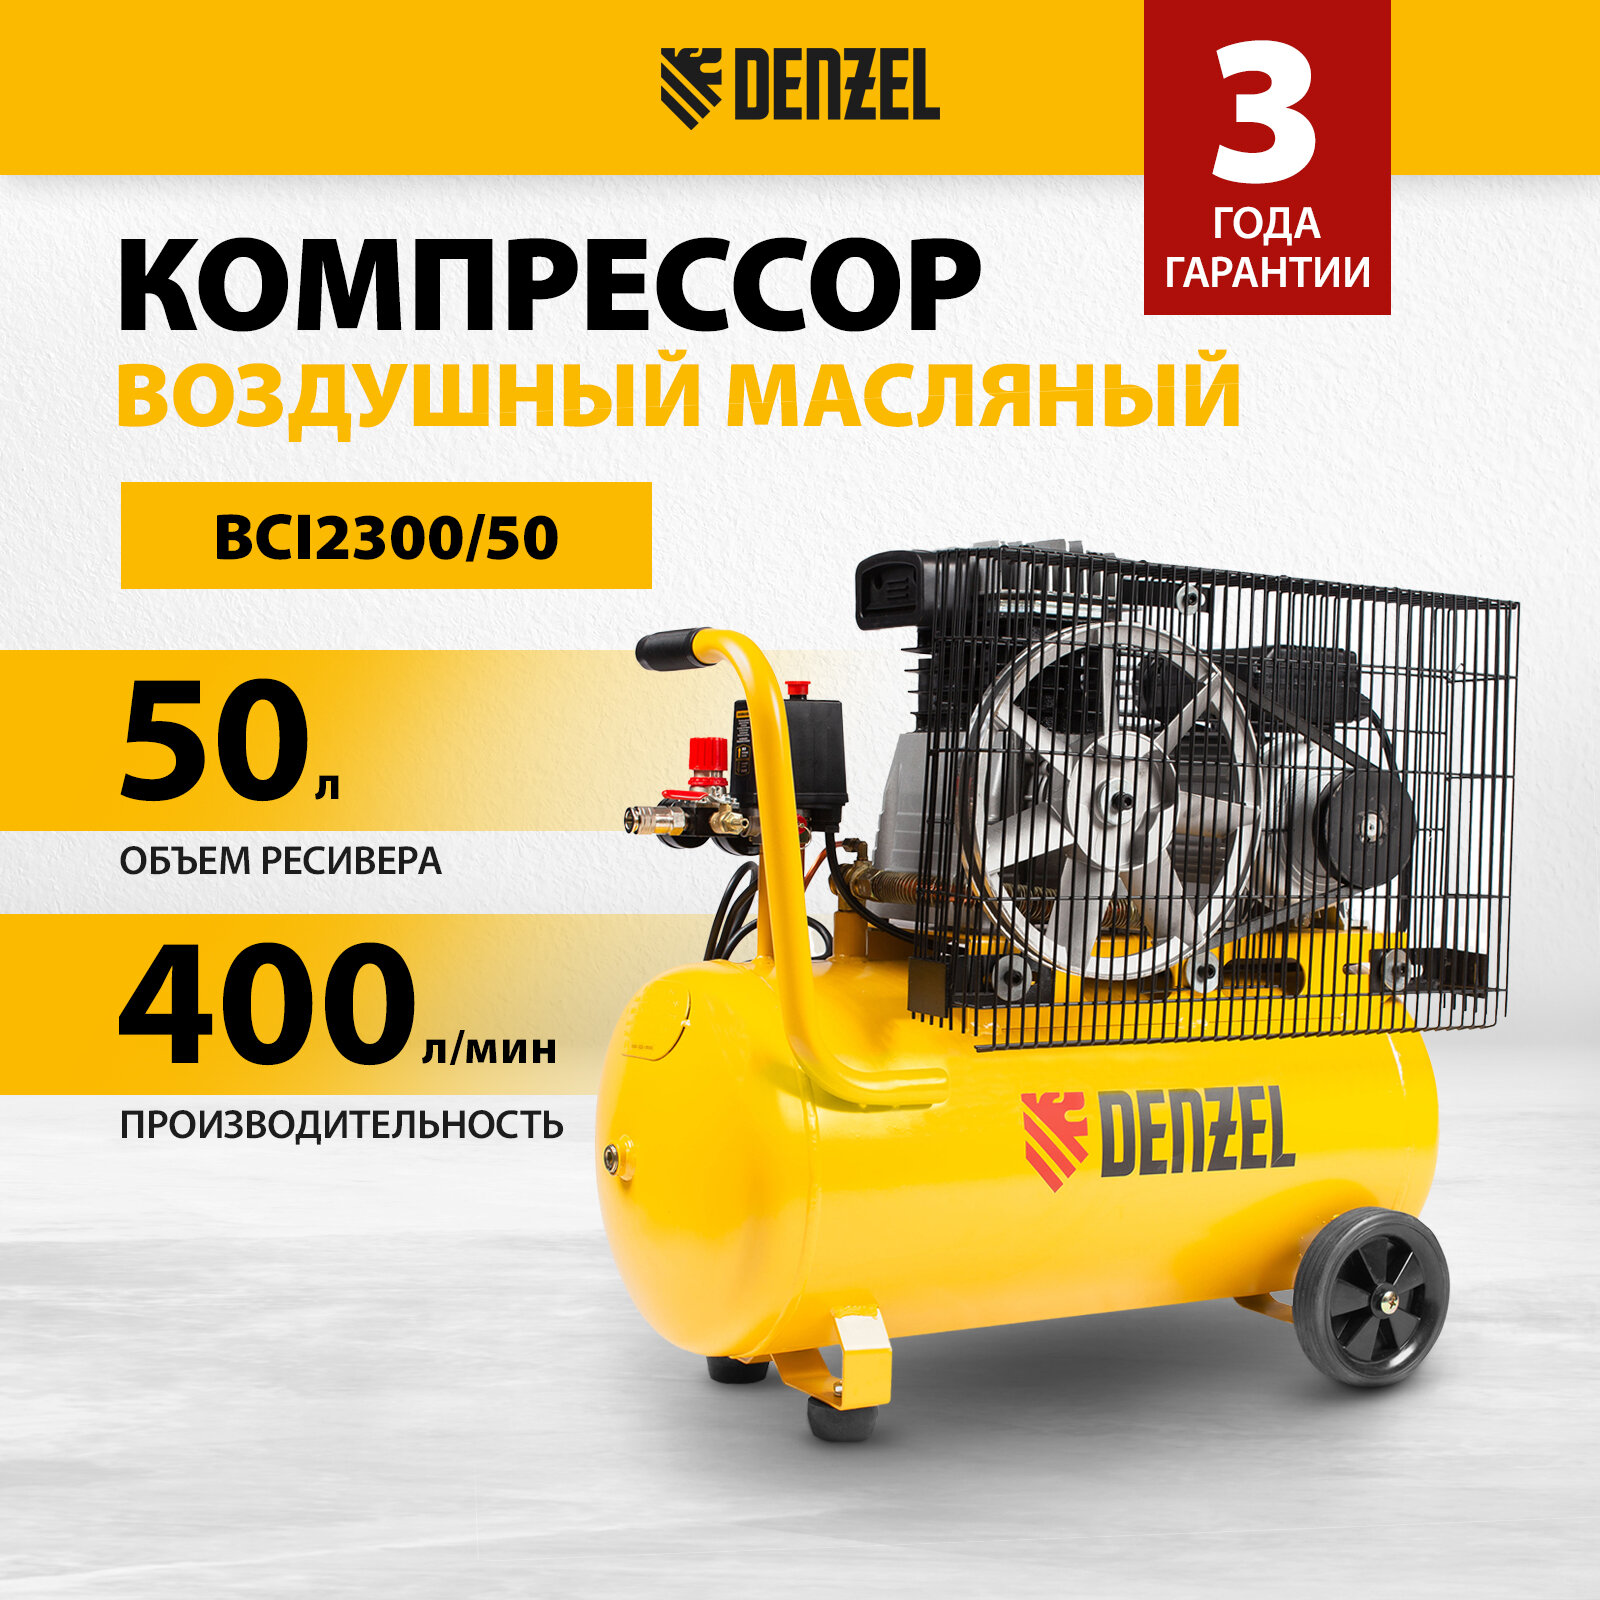 Компрессор воздушный BCI2300/50 ременный привод 23 кВт 50 литров 400 л/мин Denzel арт. 58113